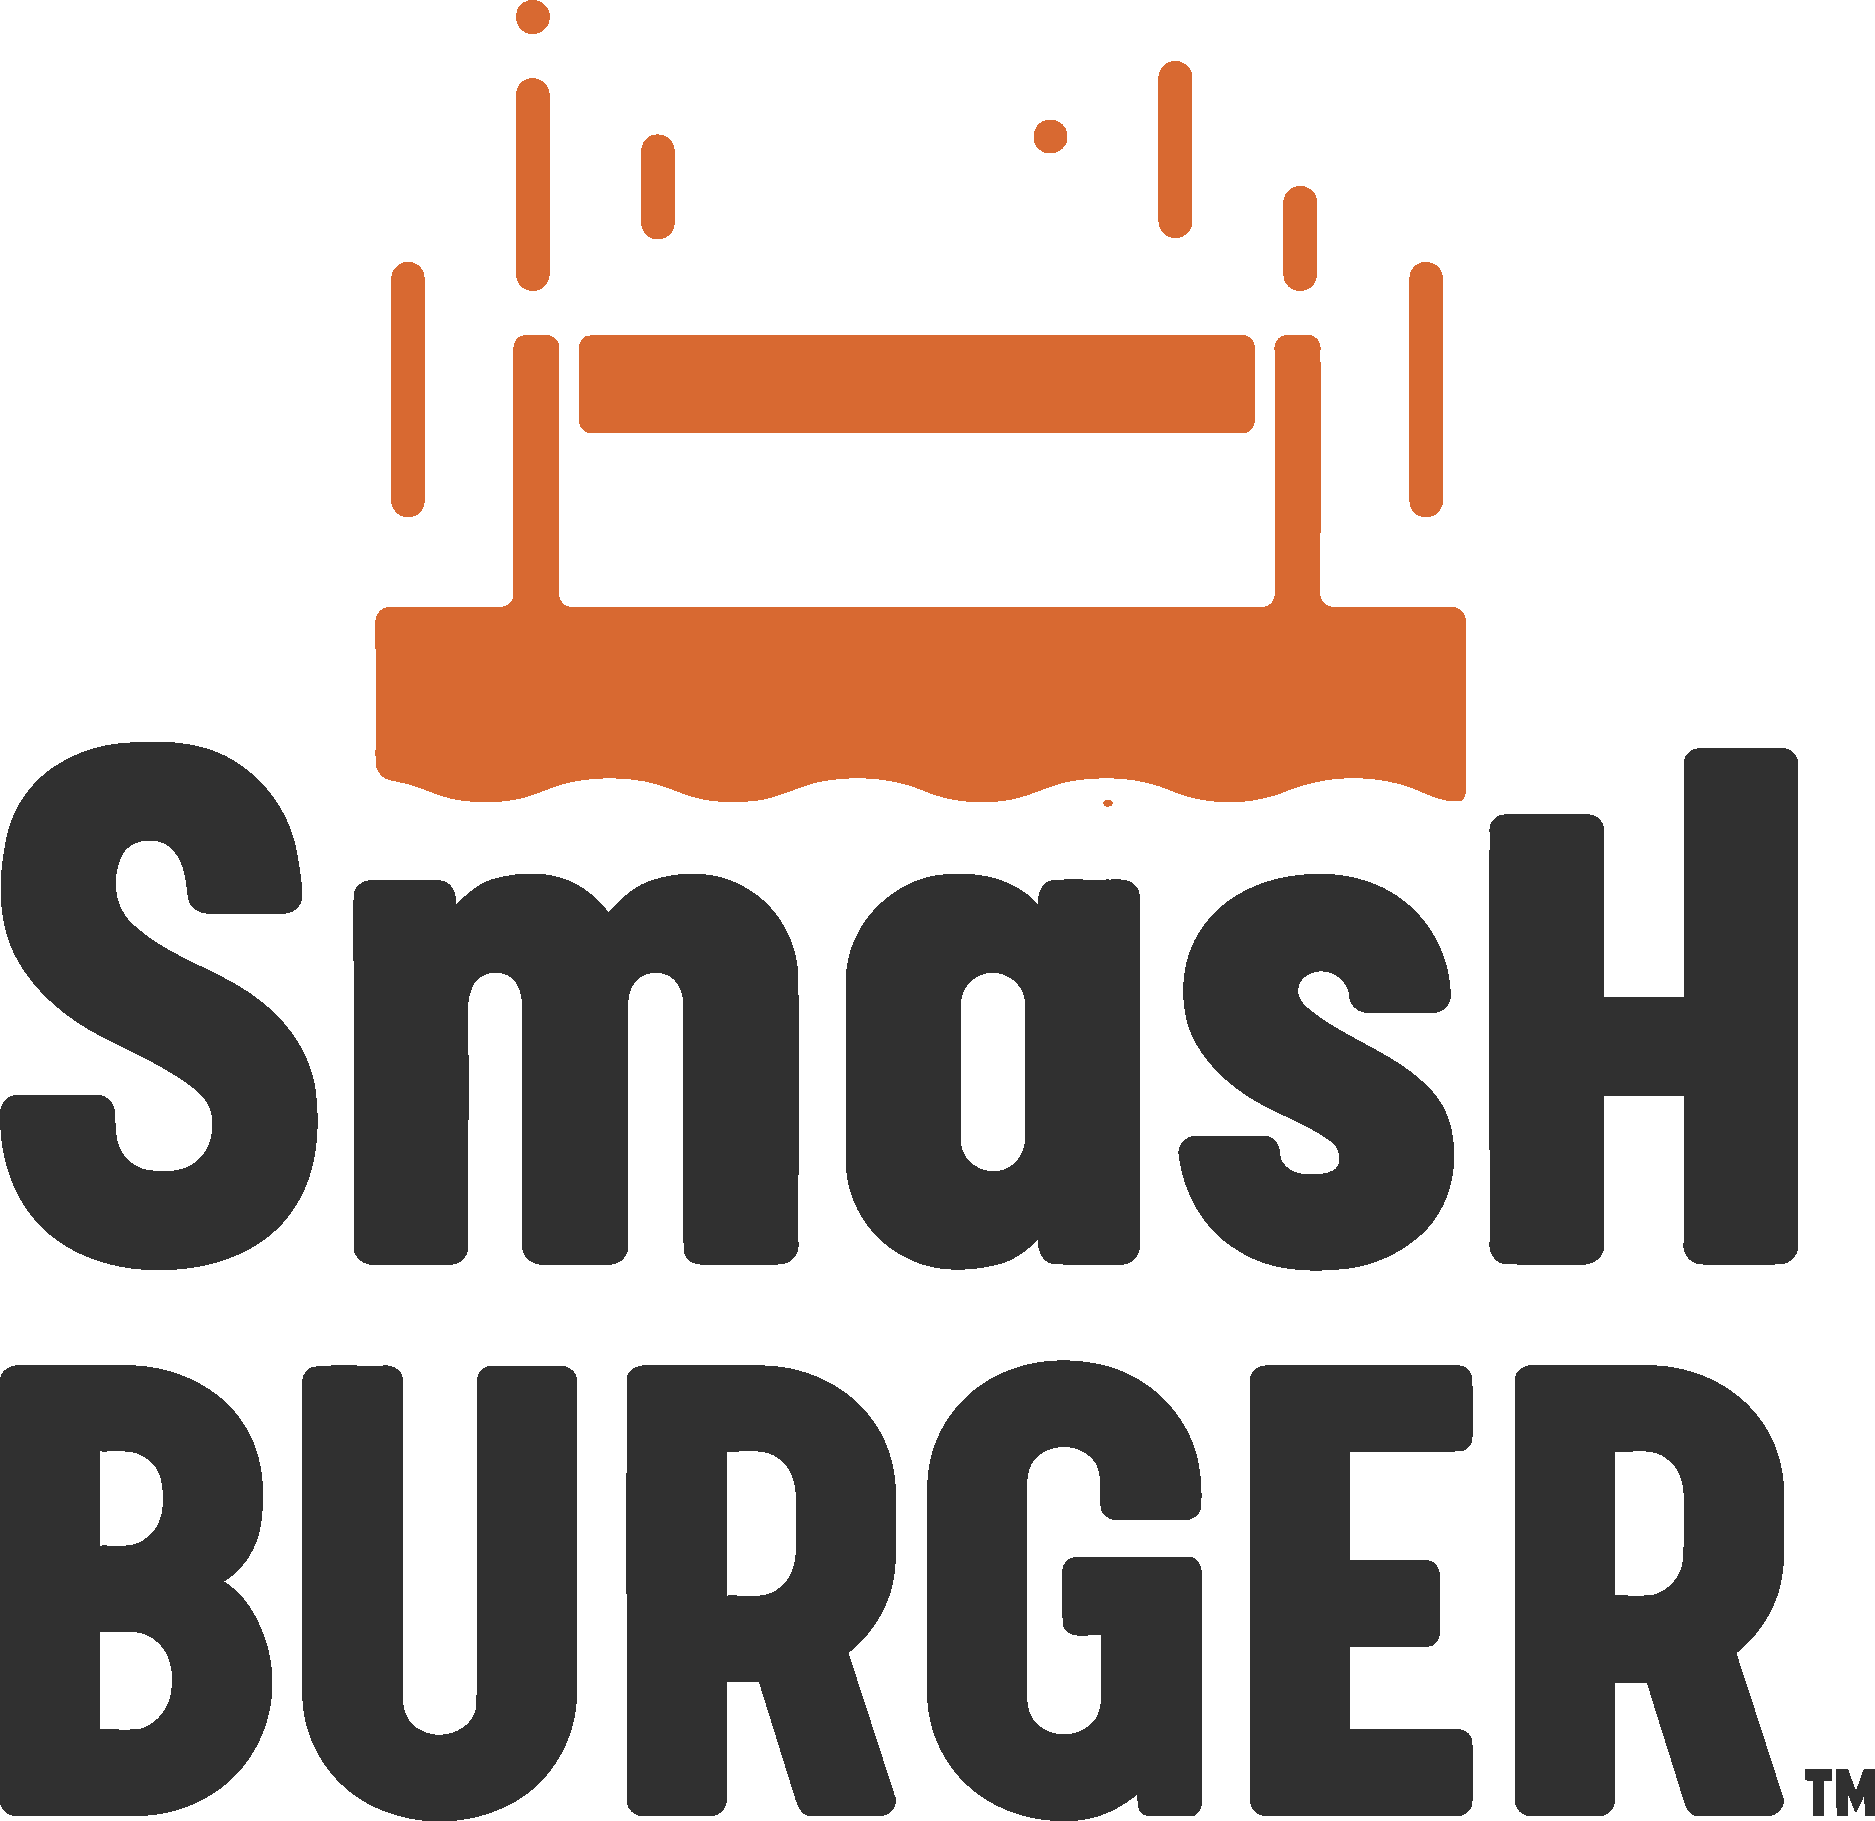 Burger Logo PNG Transparent Images Free Download | Vector Files | Pngtree